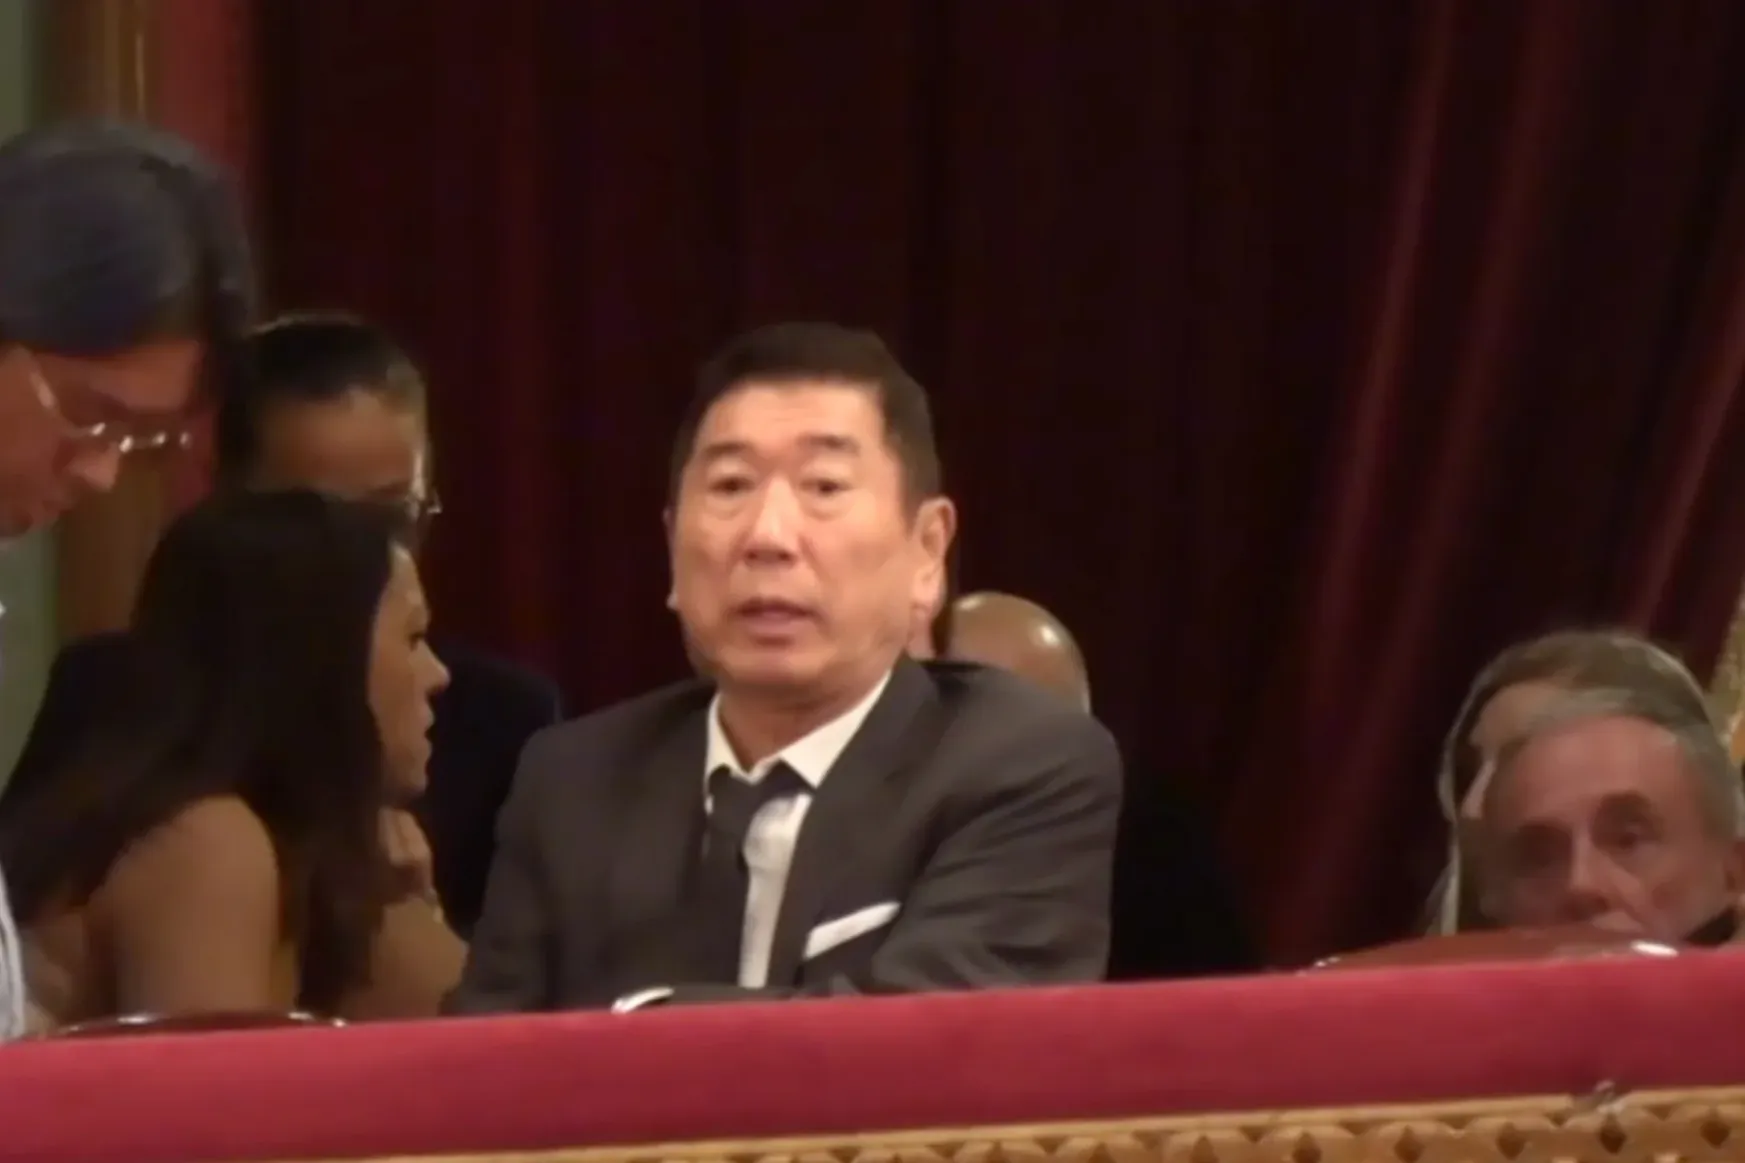 Egy japán férfi kibérelt a 73. szülinapjára egy színházat Palermóban. Egy hétre. Az 1500 vendégnek